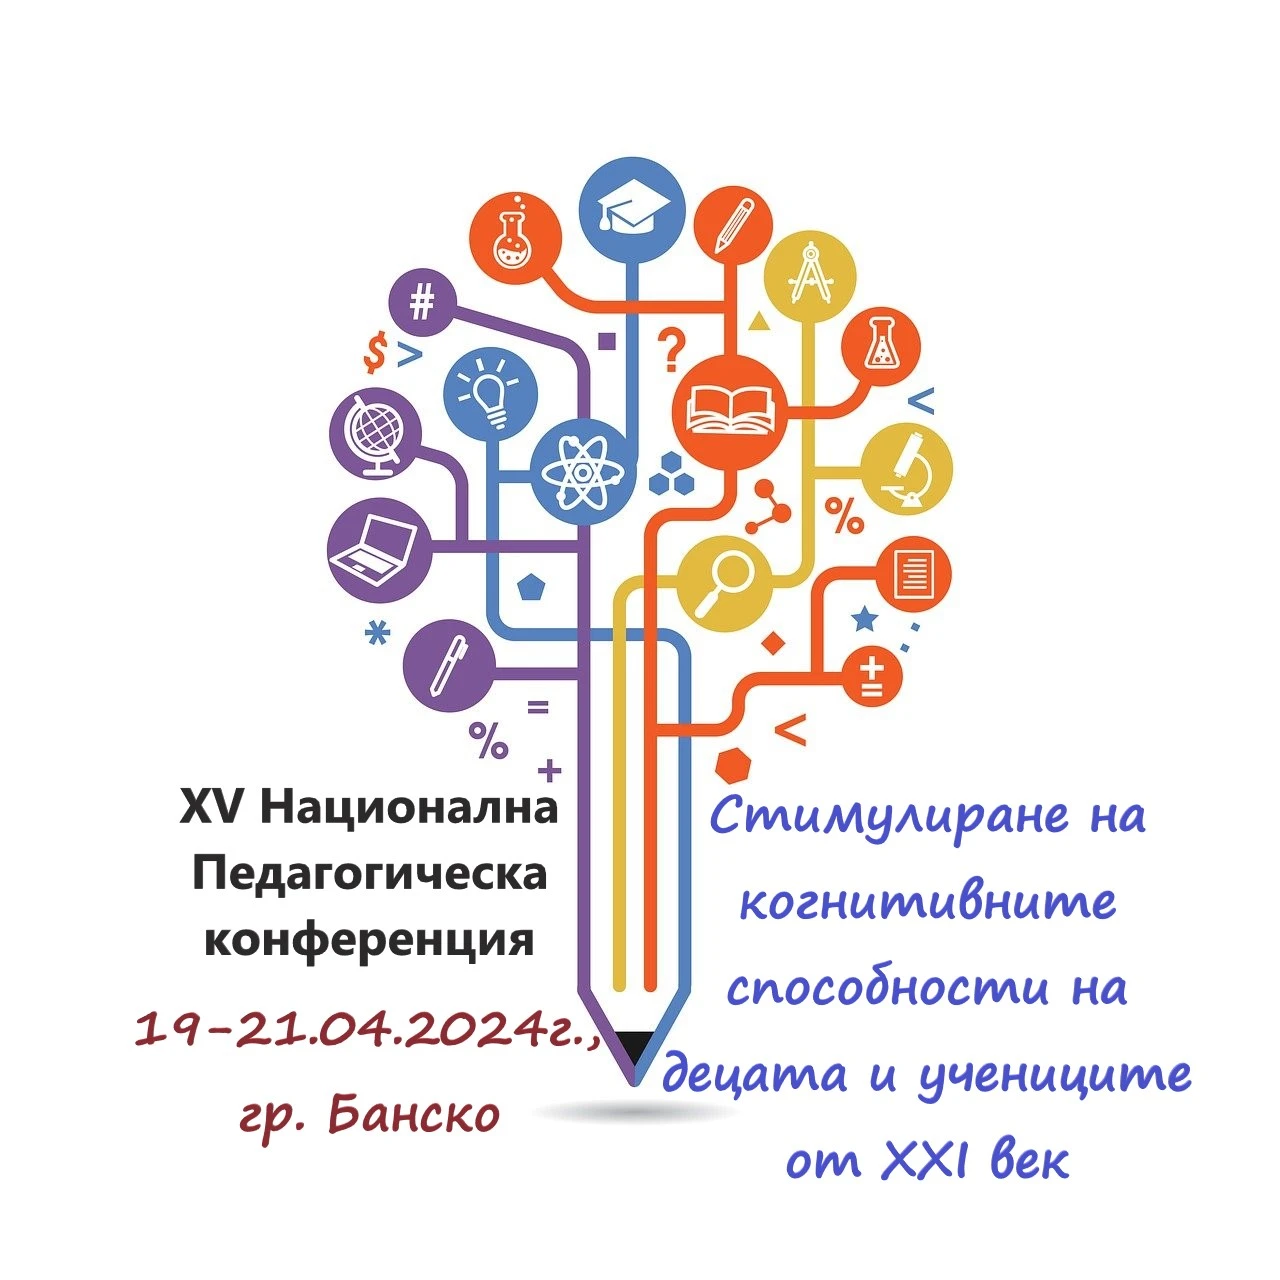 Покана за XV Национална Педагогическа конференция 19-21.04.2024г., гр. Банско.